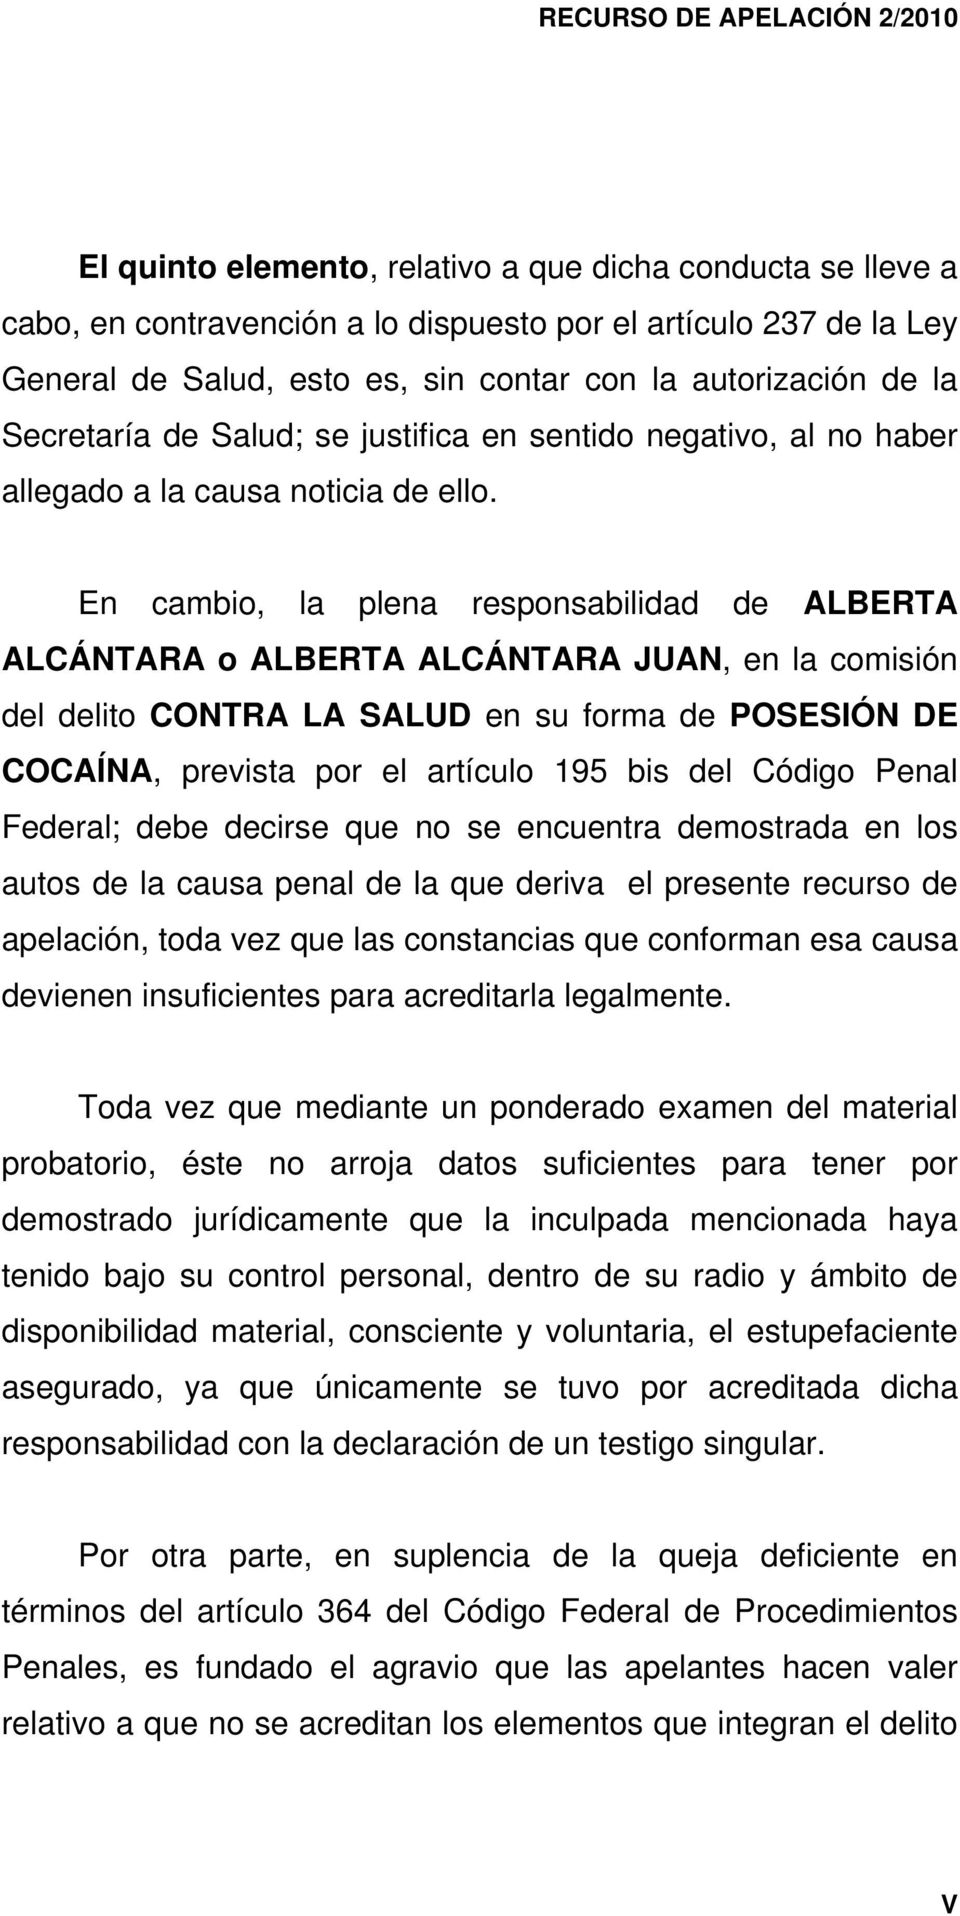 En cambio, la plena responsabilidad de ALBERTA ALCÁNTARA o ALBERTA ALCÁNTARA JUAN, en la comisión del delito CONTRA LA SALUD en su forma de POSESIÓN DE COCAÍNA, prevista por el artículo 195 bis del